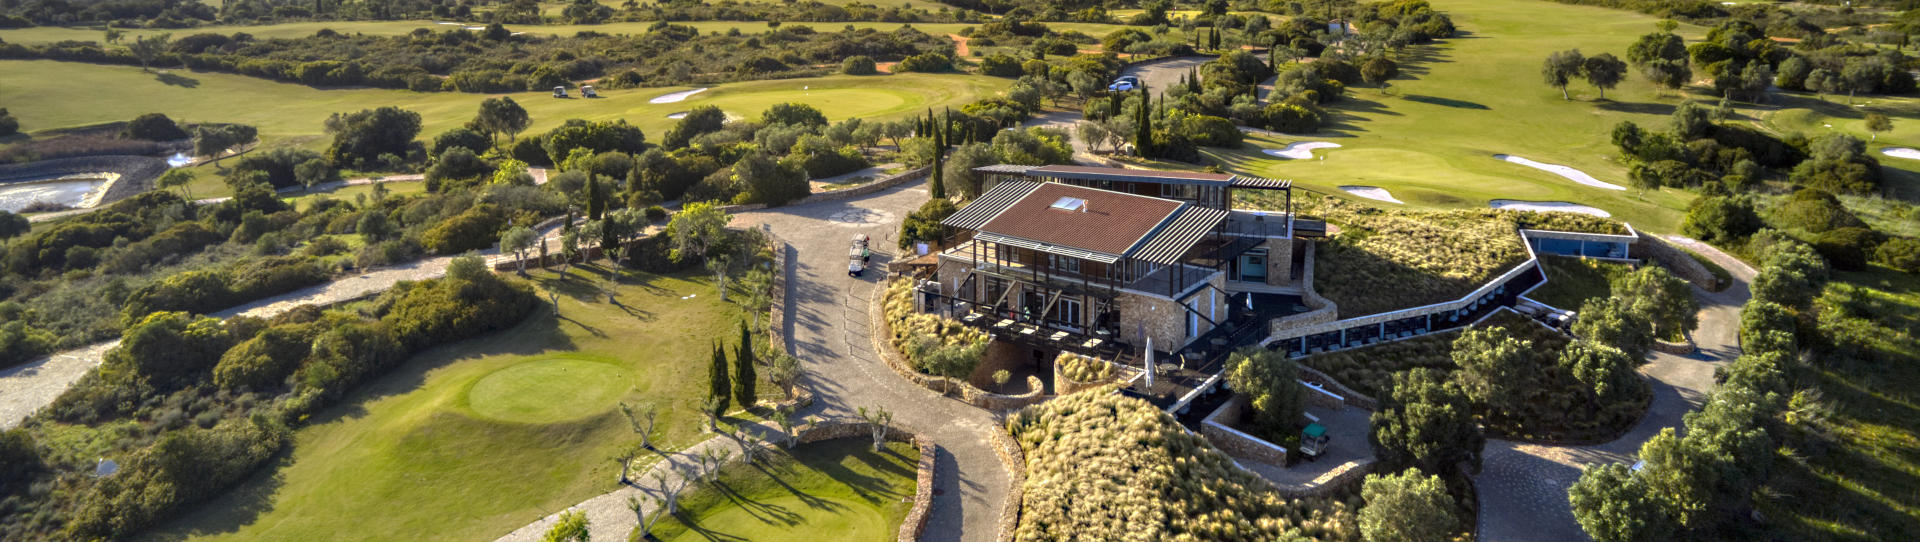 Portugal golf courses - Espiche Golf Course - Photo 2